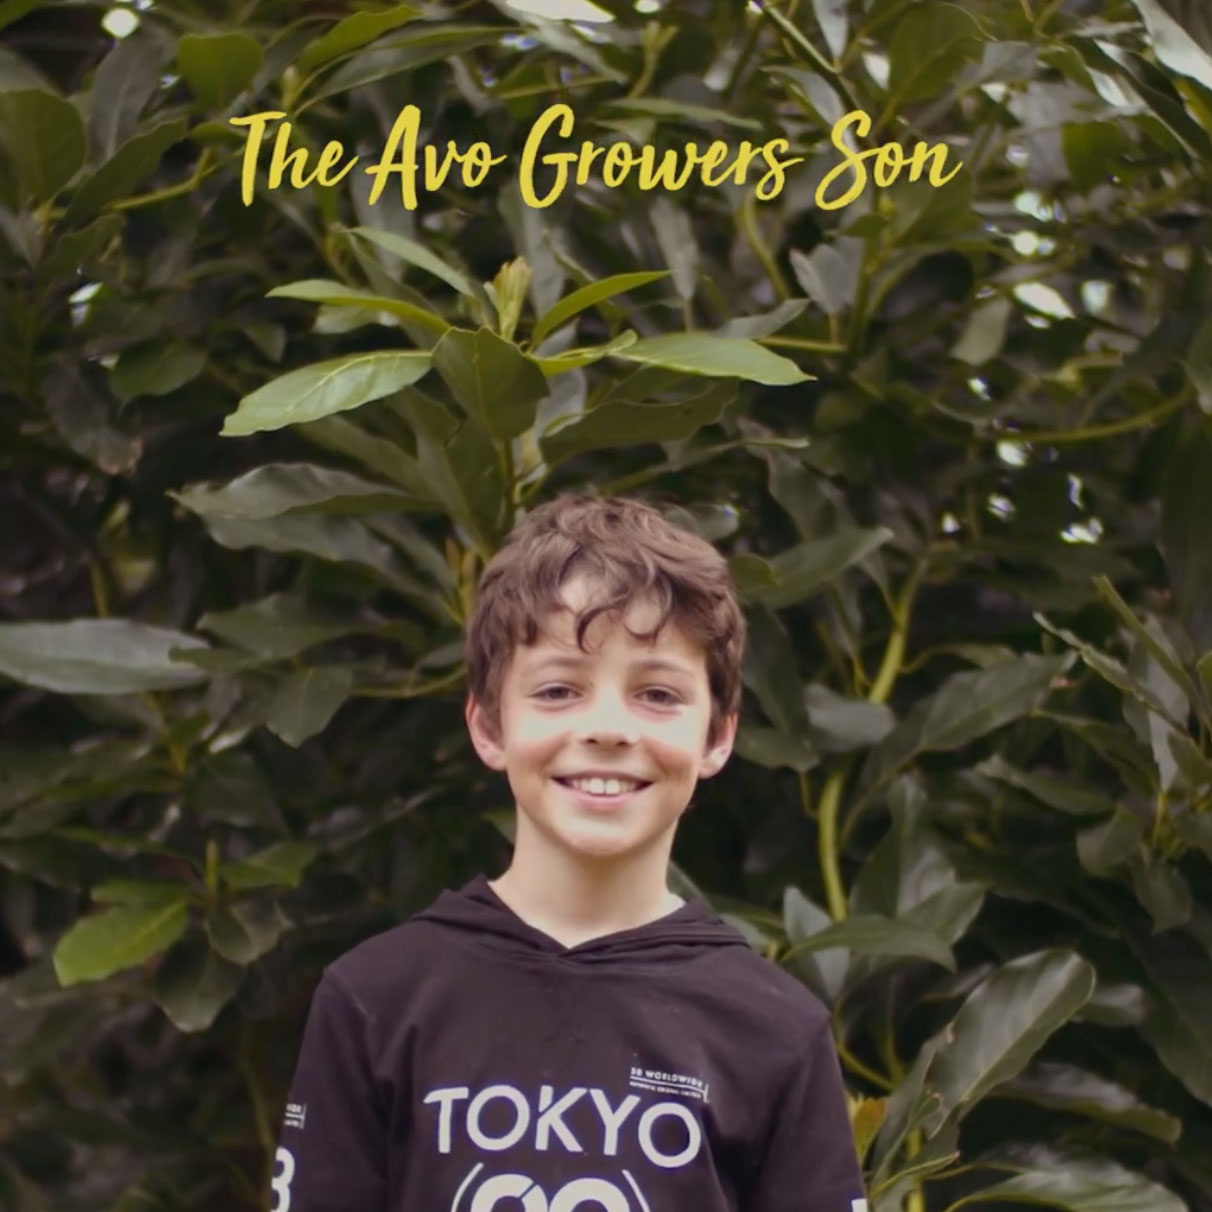 Meet Thomas the avocado grower’s son